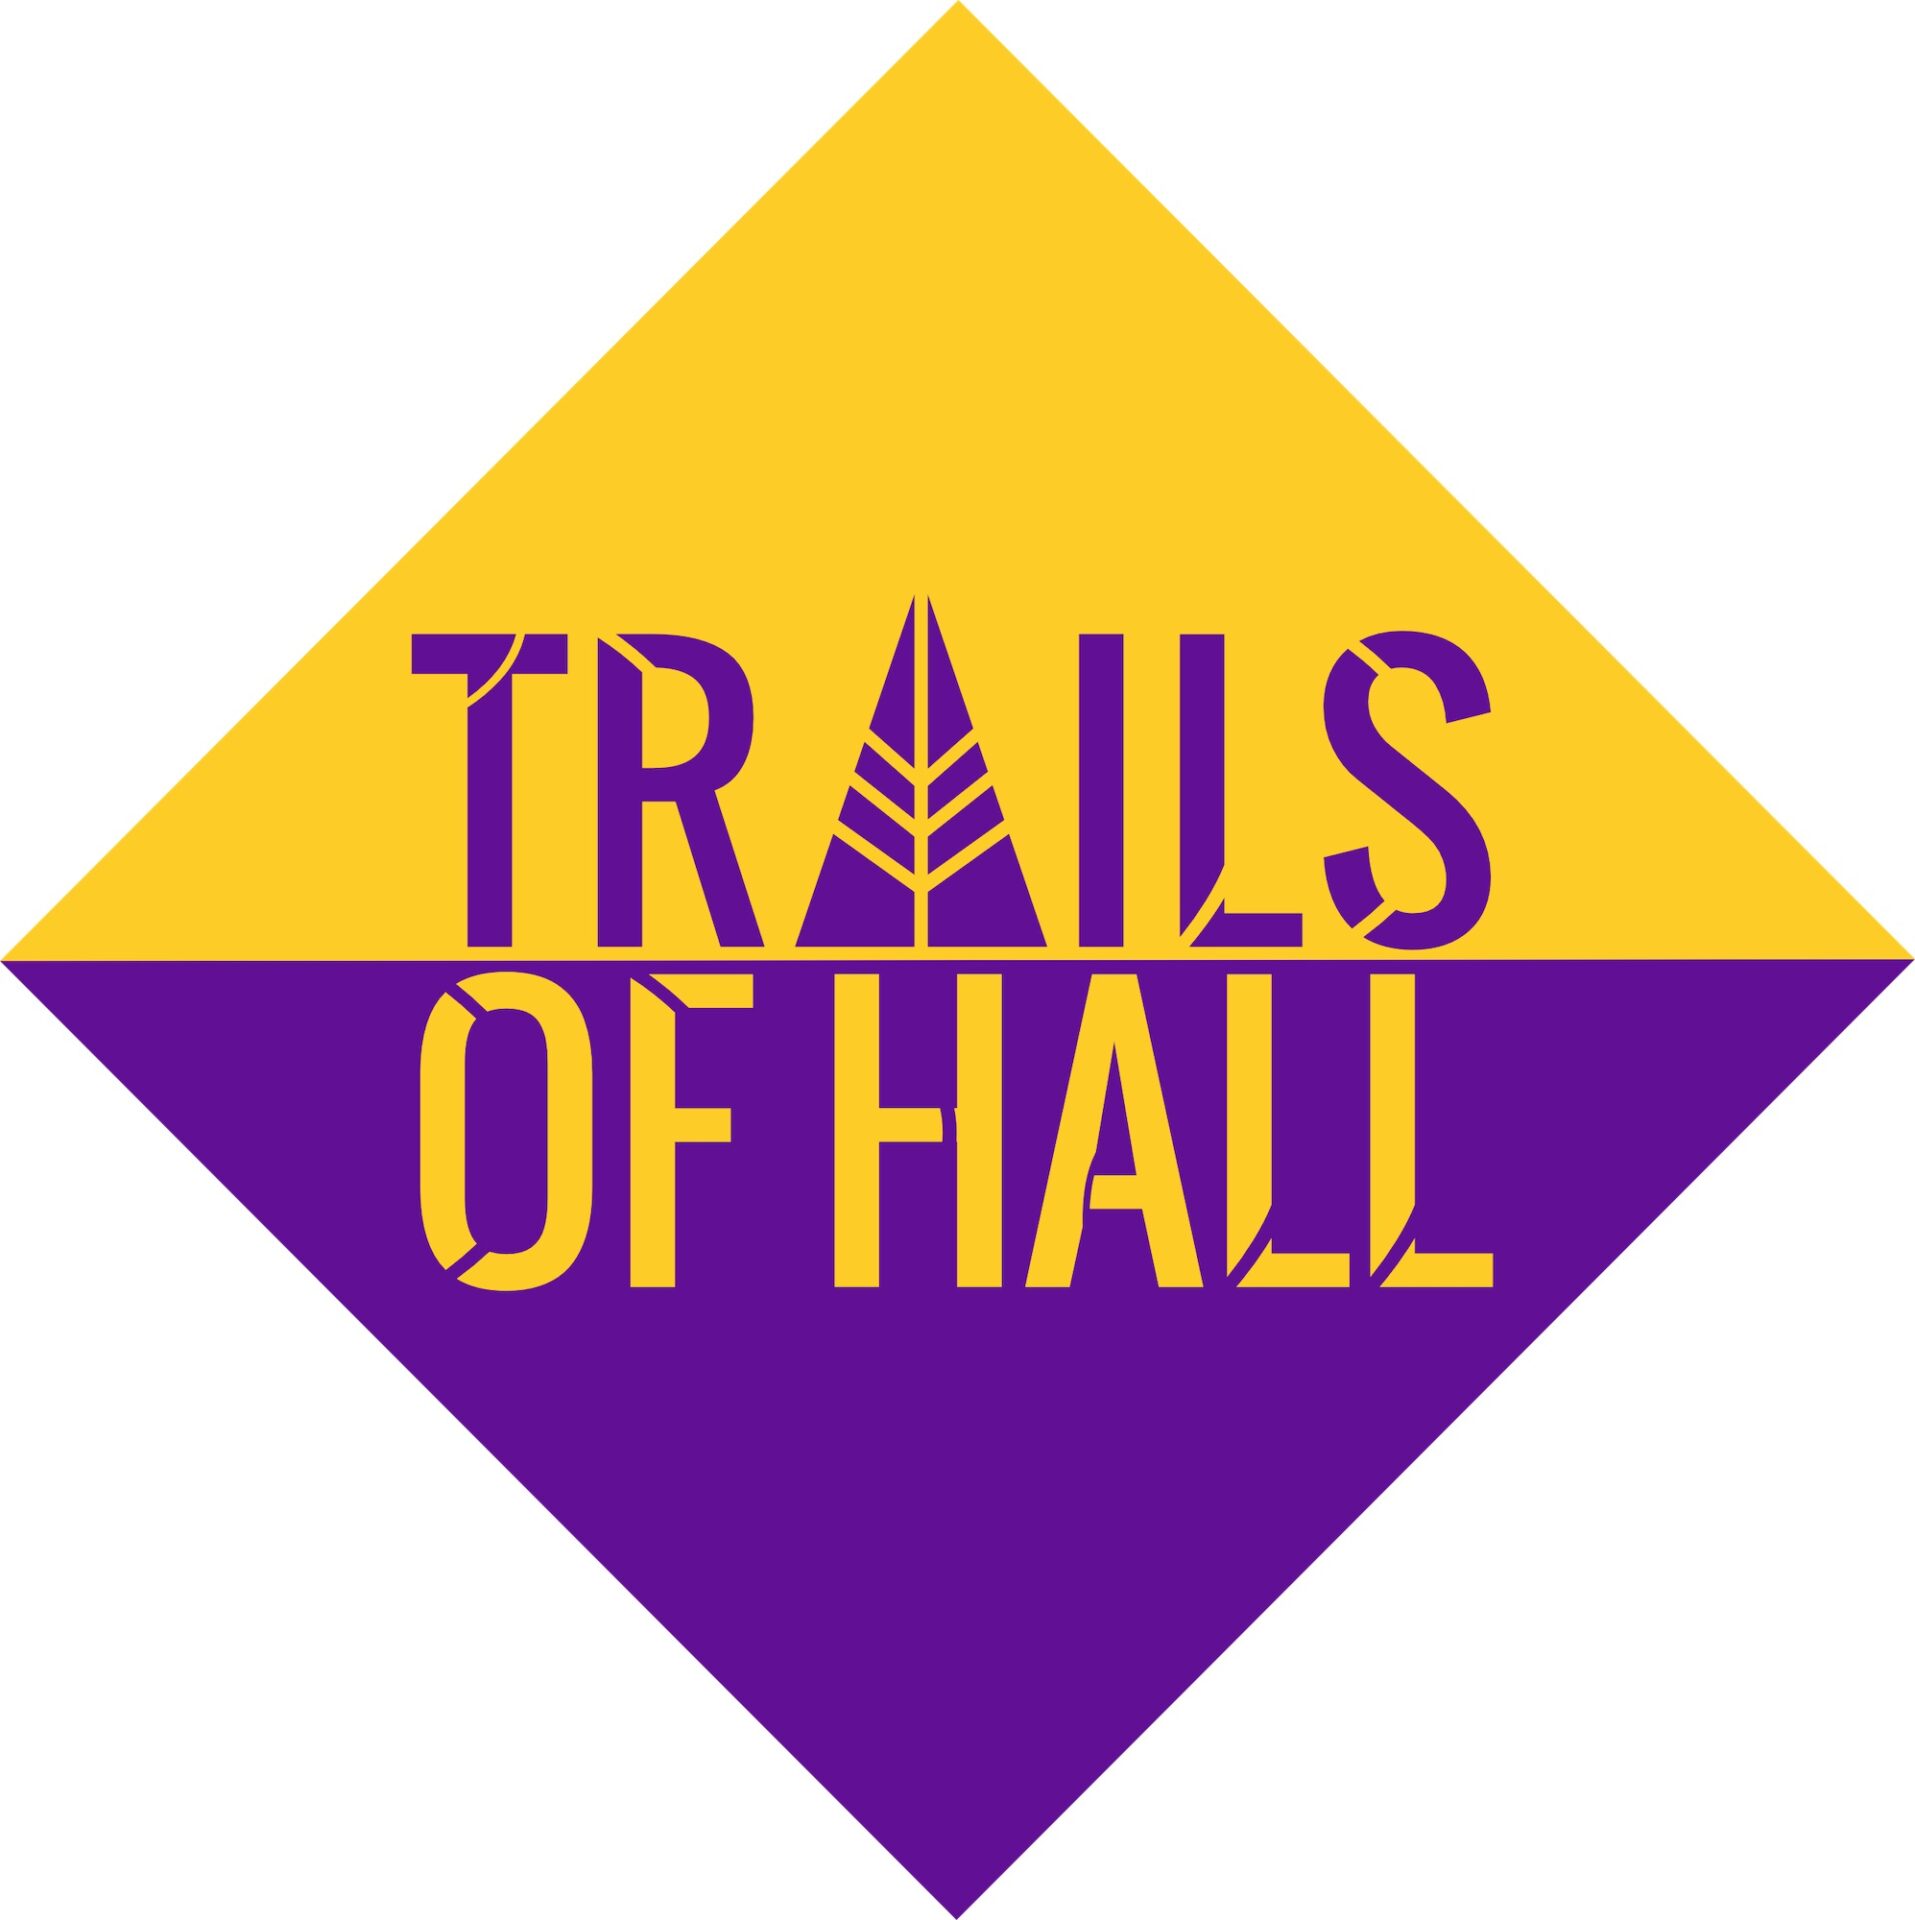 Trails of Hall räumt auf – für ein sauberes Miteinander (Baden-Württemberg)